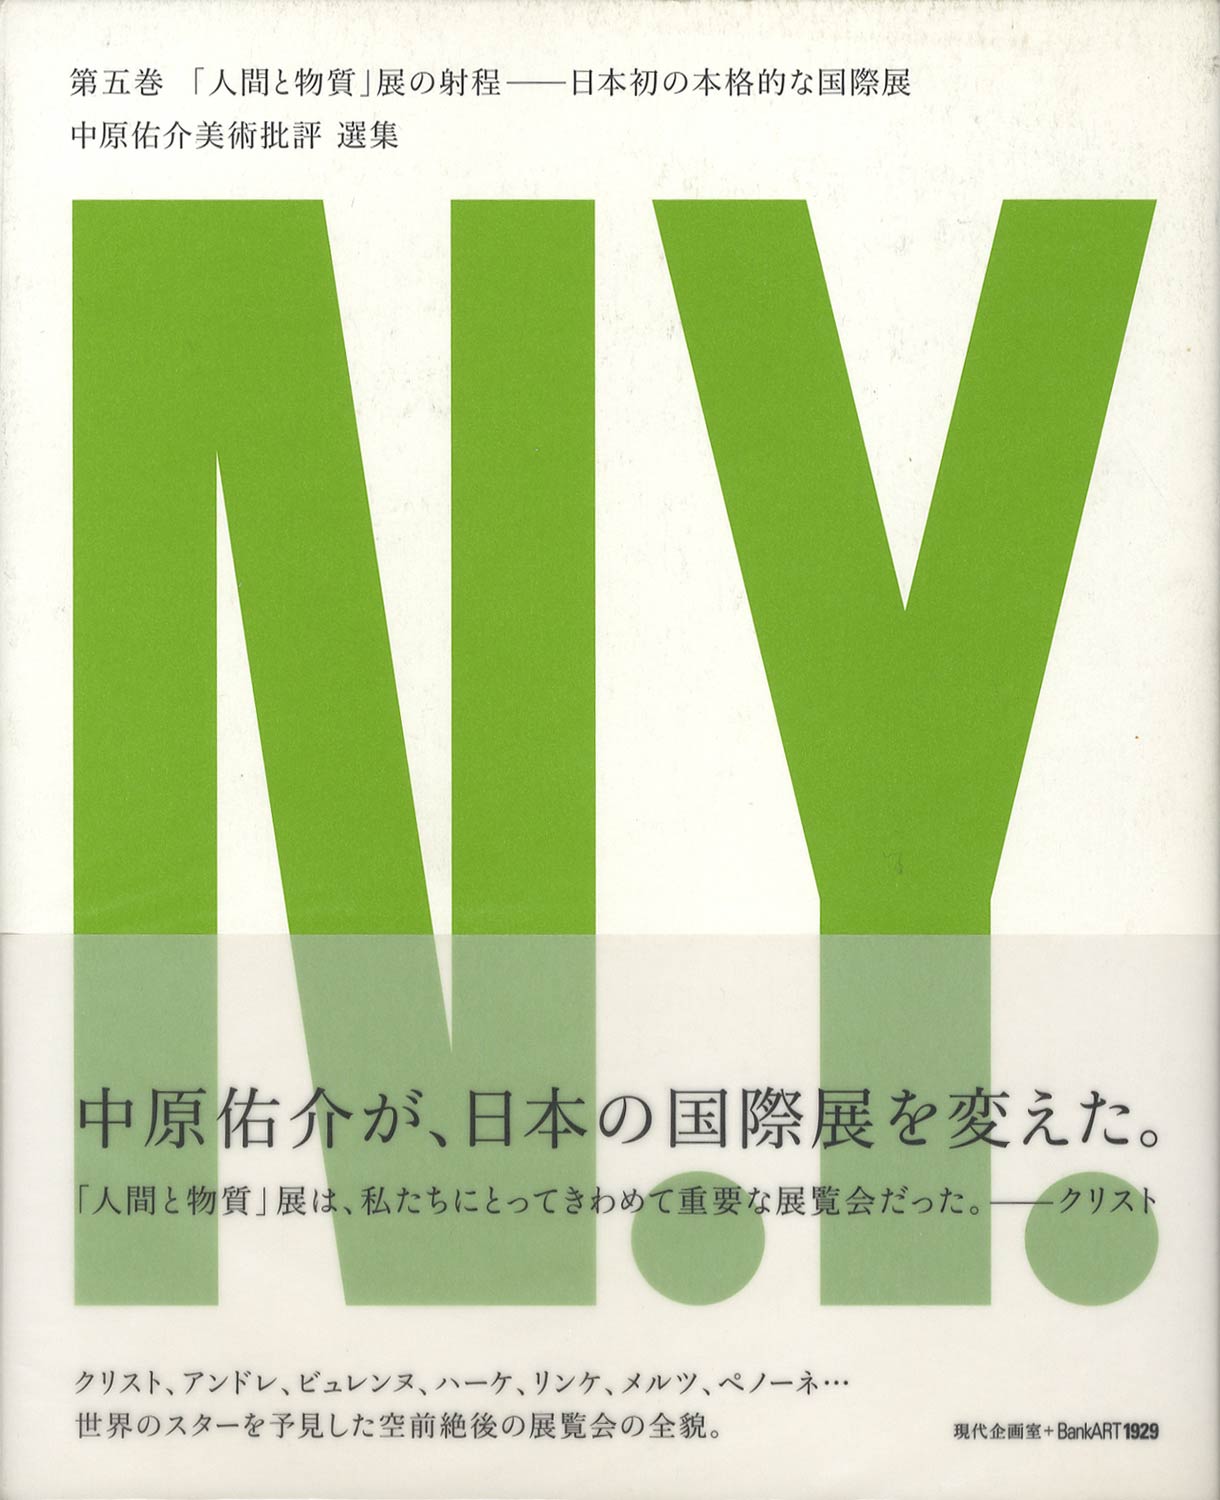 「人間と物質」展の射程──日本初の本格的な国際展　中原佑介美術批評 選集 第五巻